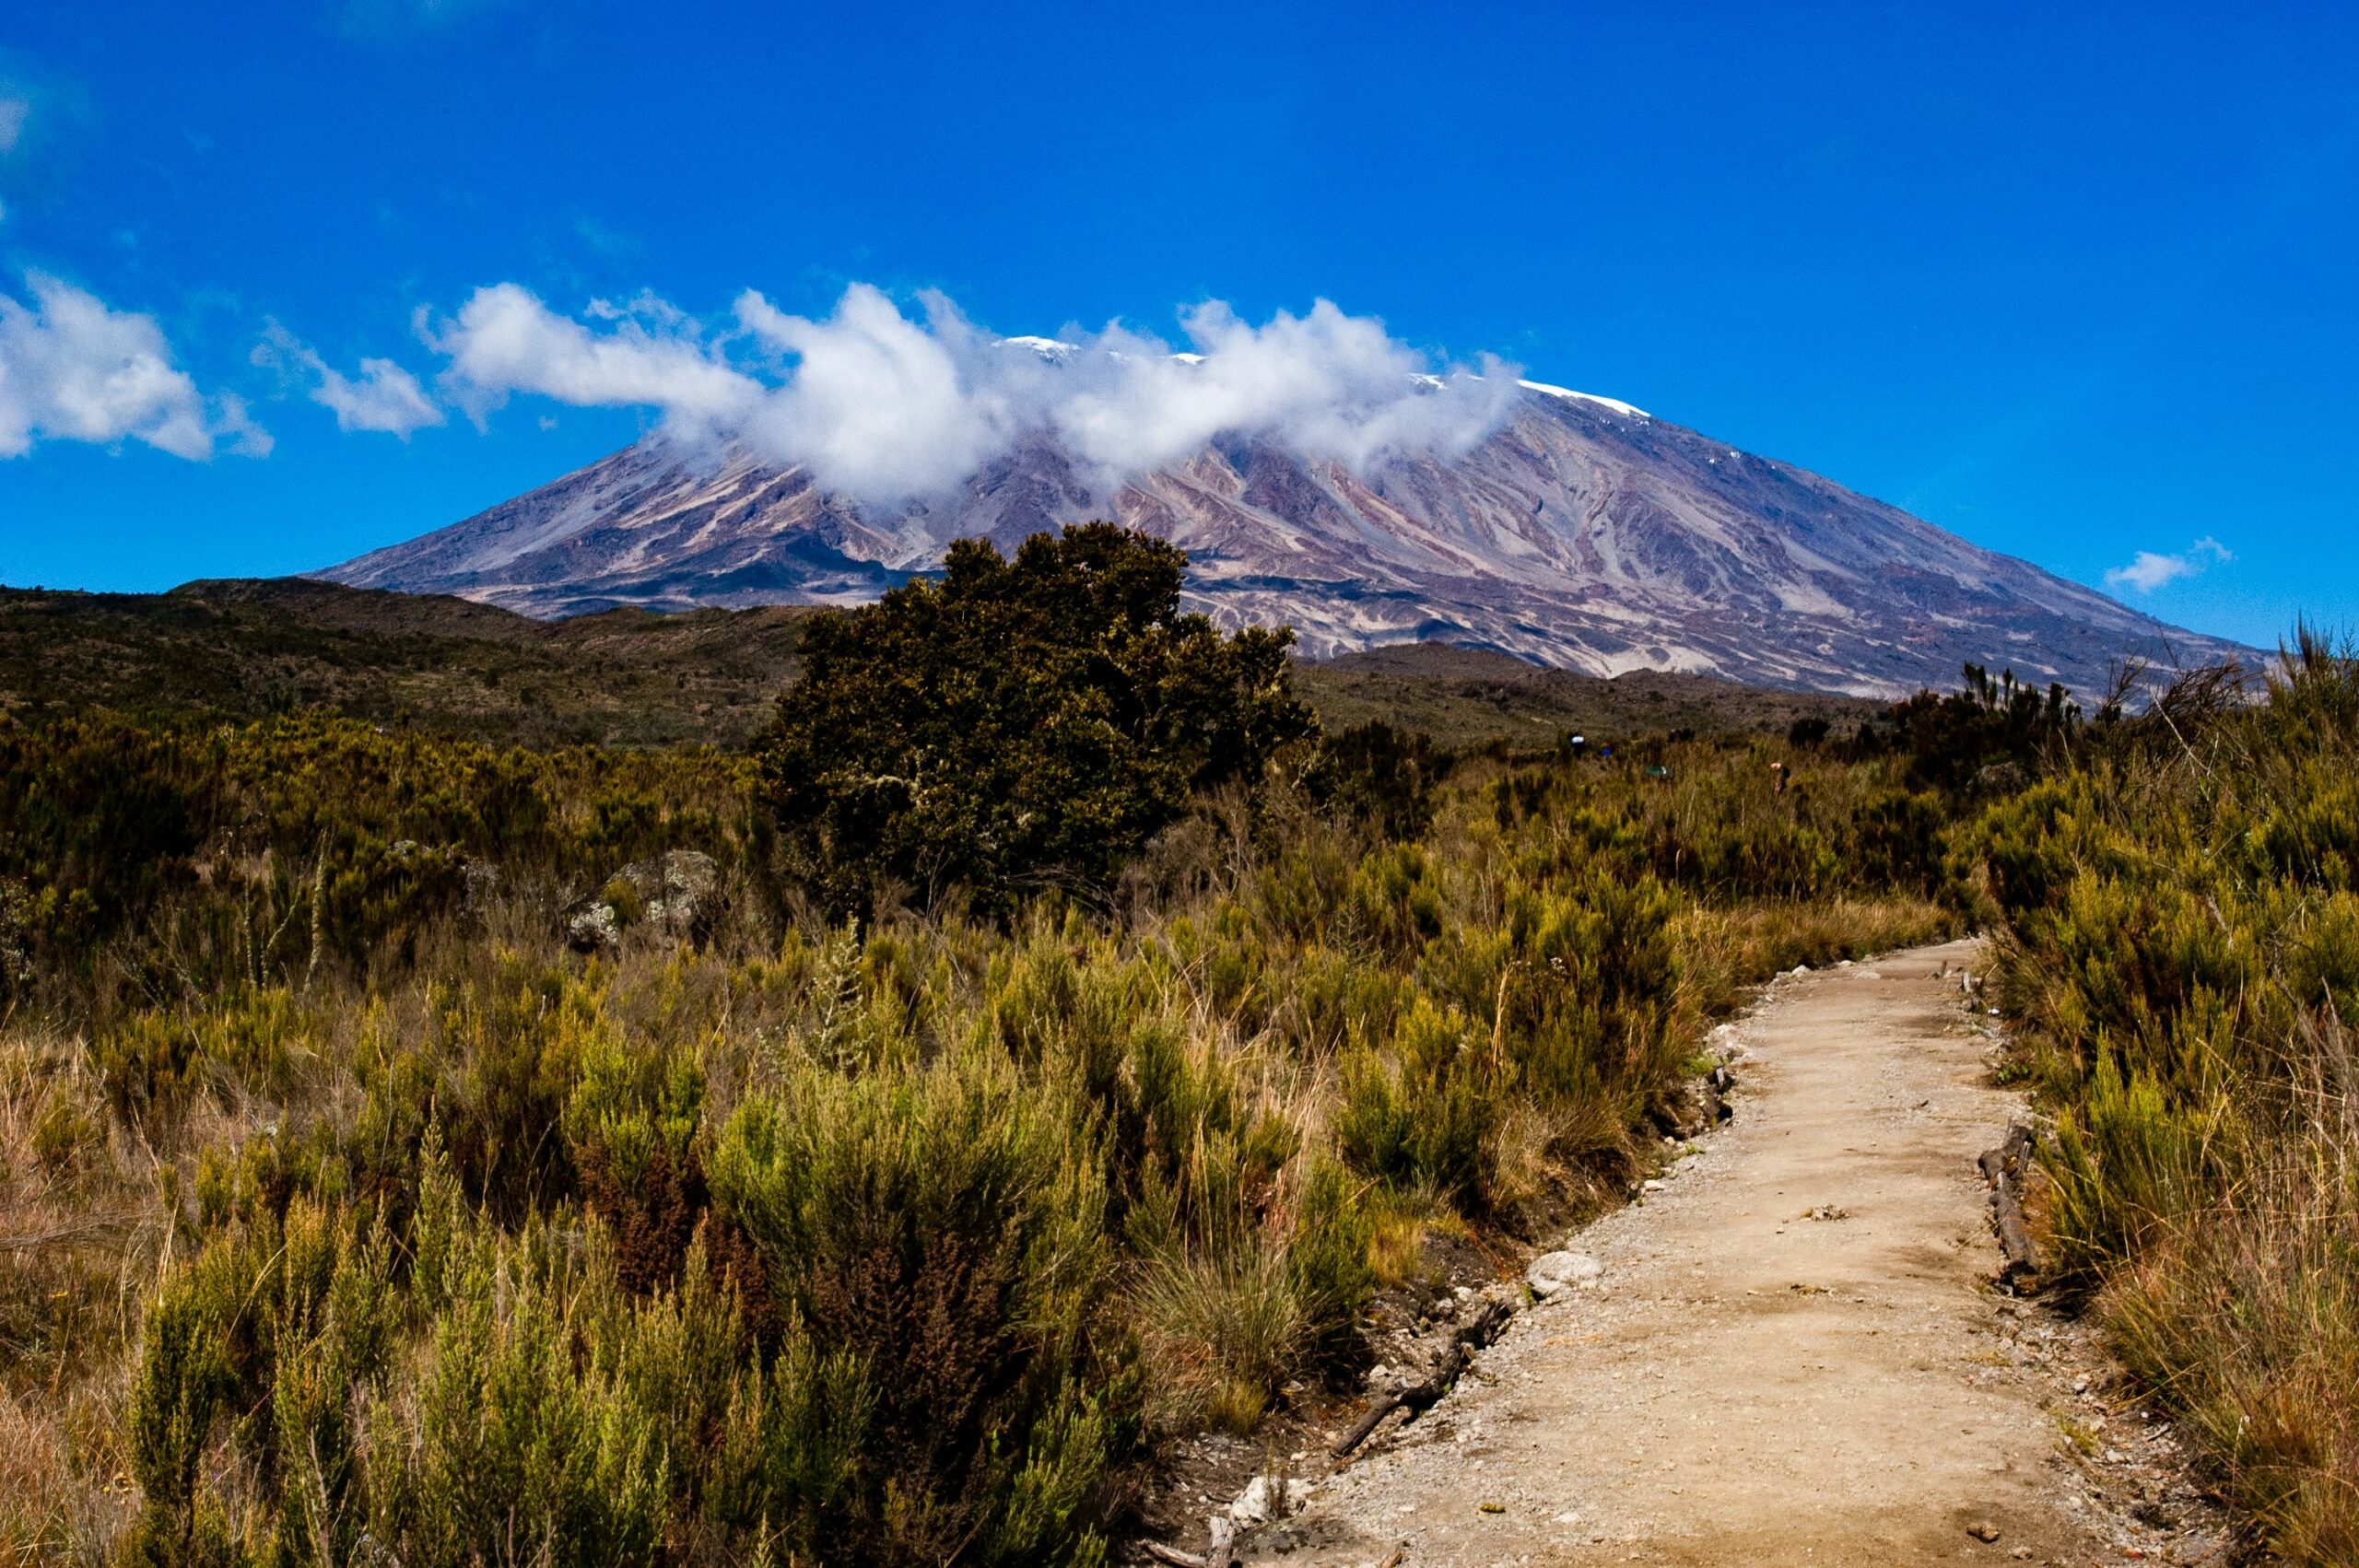 Travelers should hike Kilimanjaro during their July visit to Tanzania. 
Pictured: Kilimanjaro 